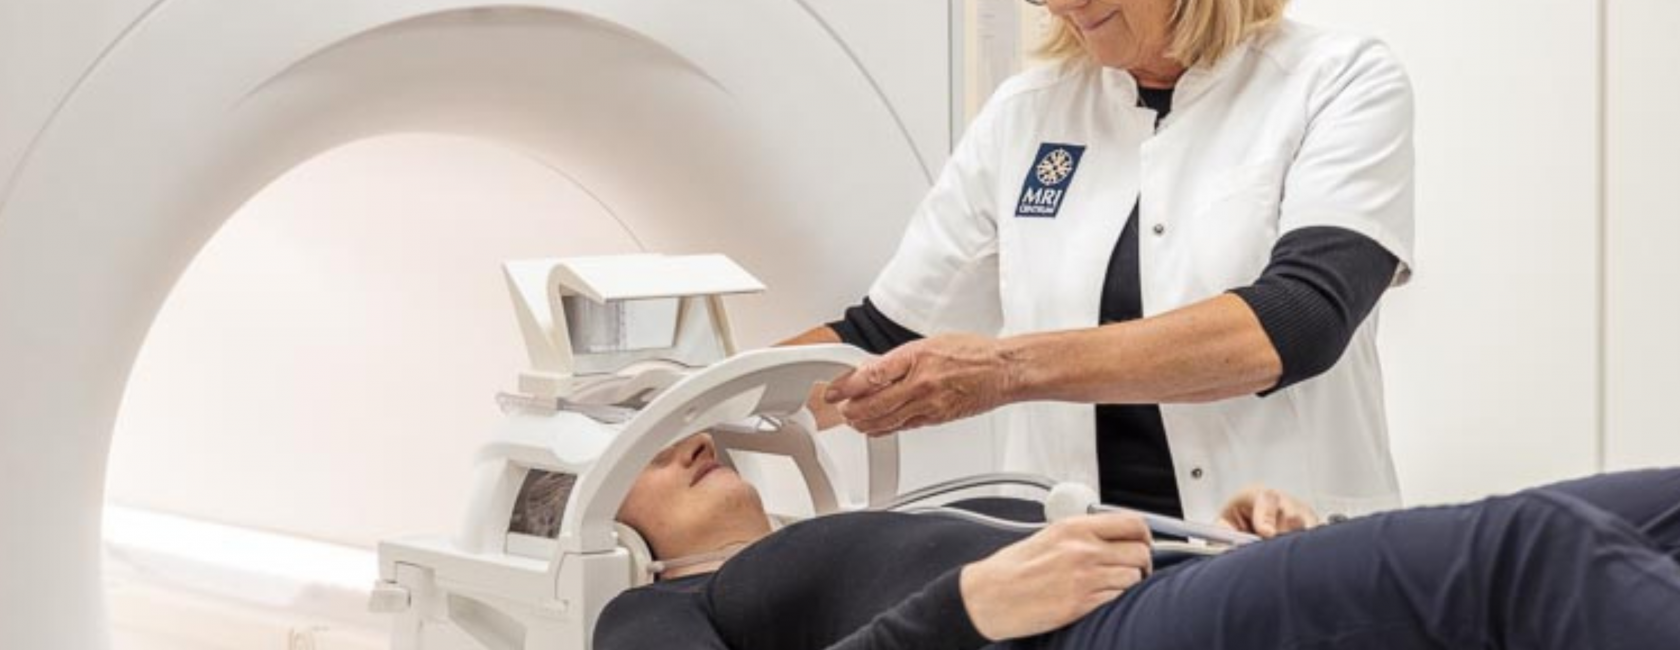 MRI centrum groningen ontwikkelingen